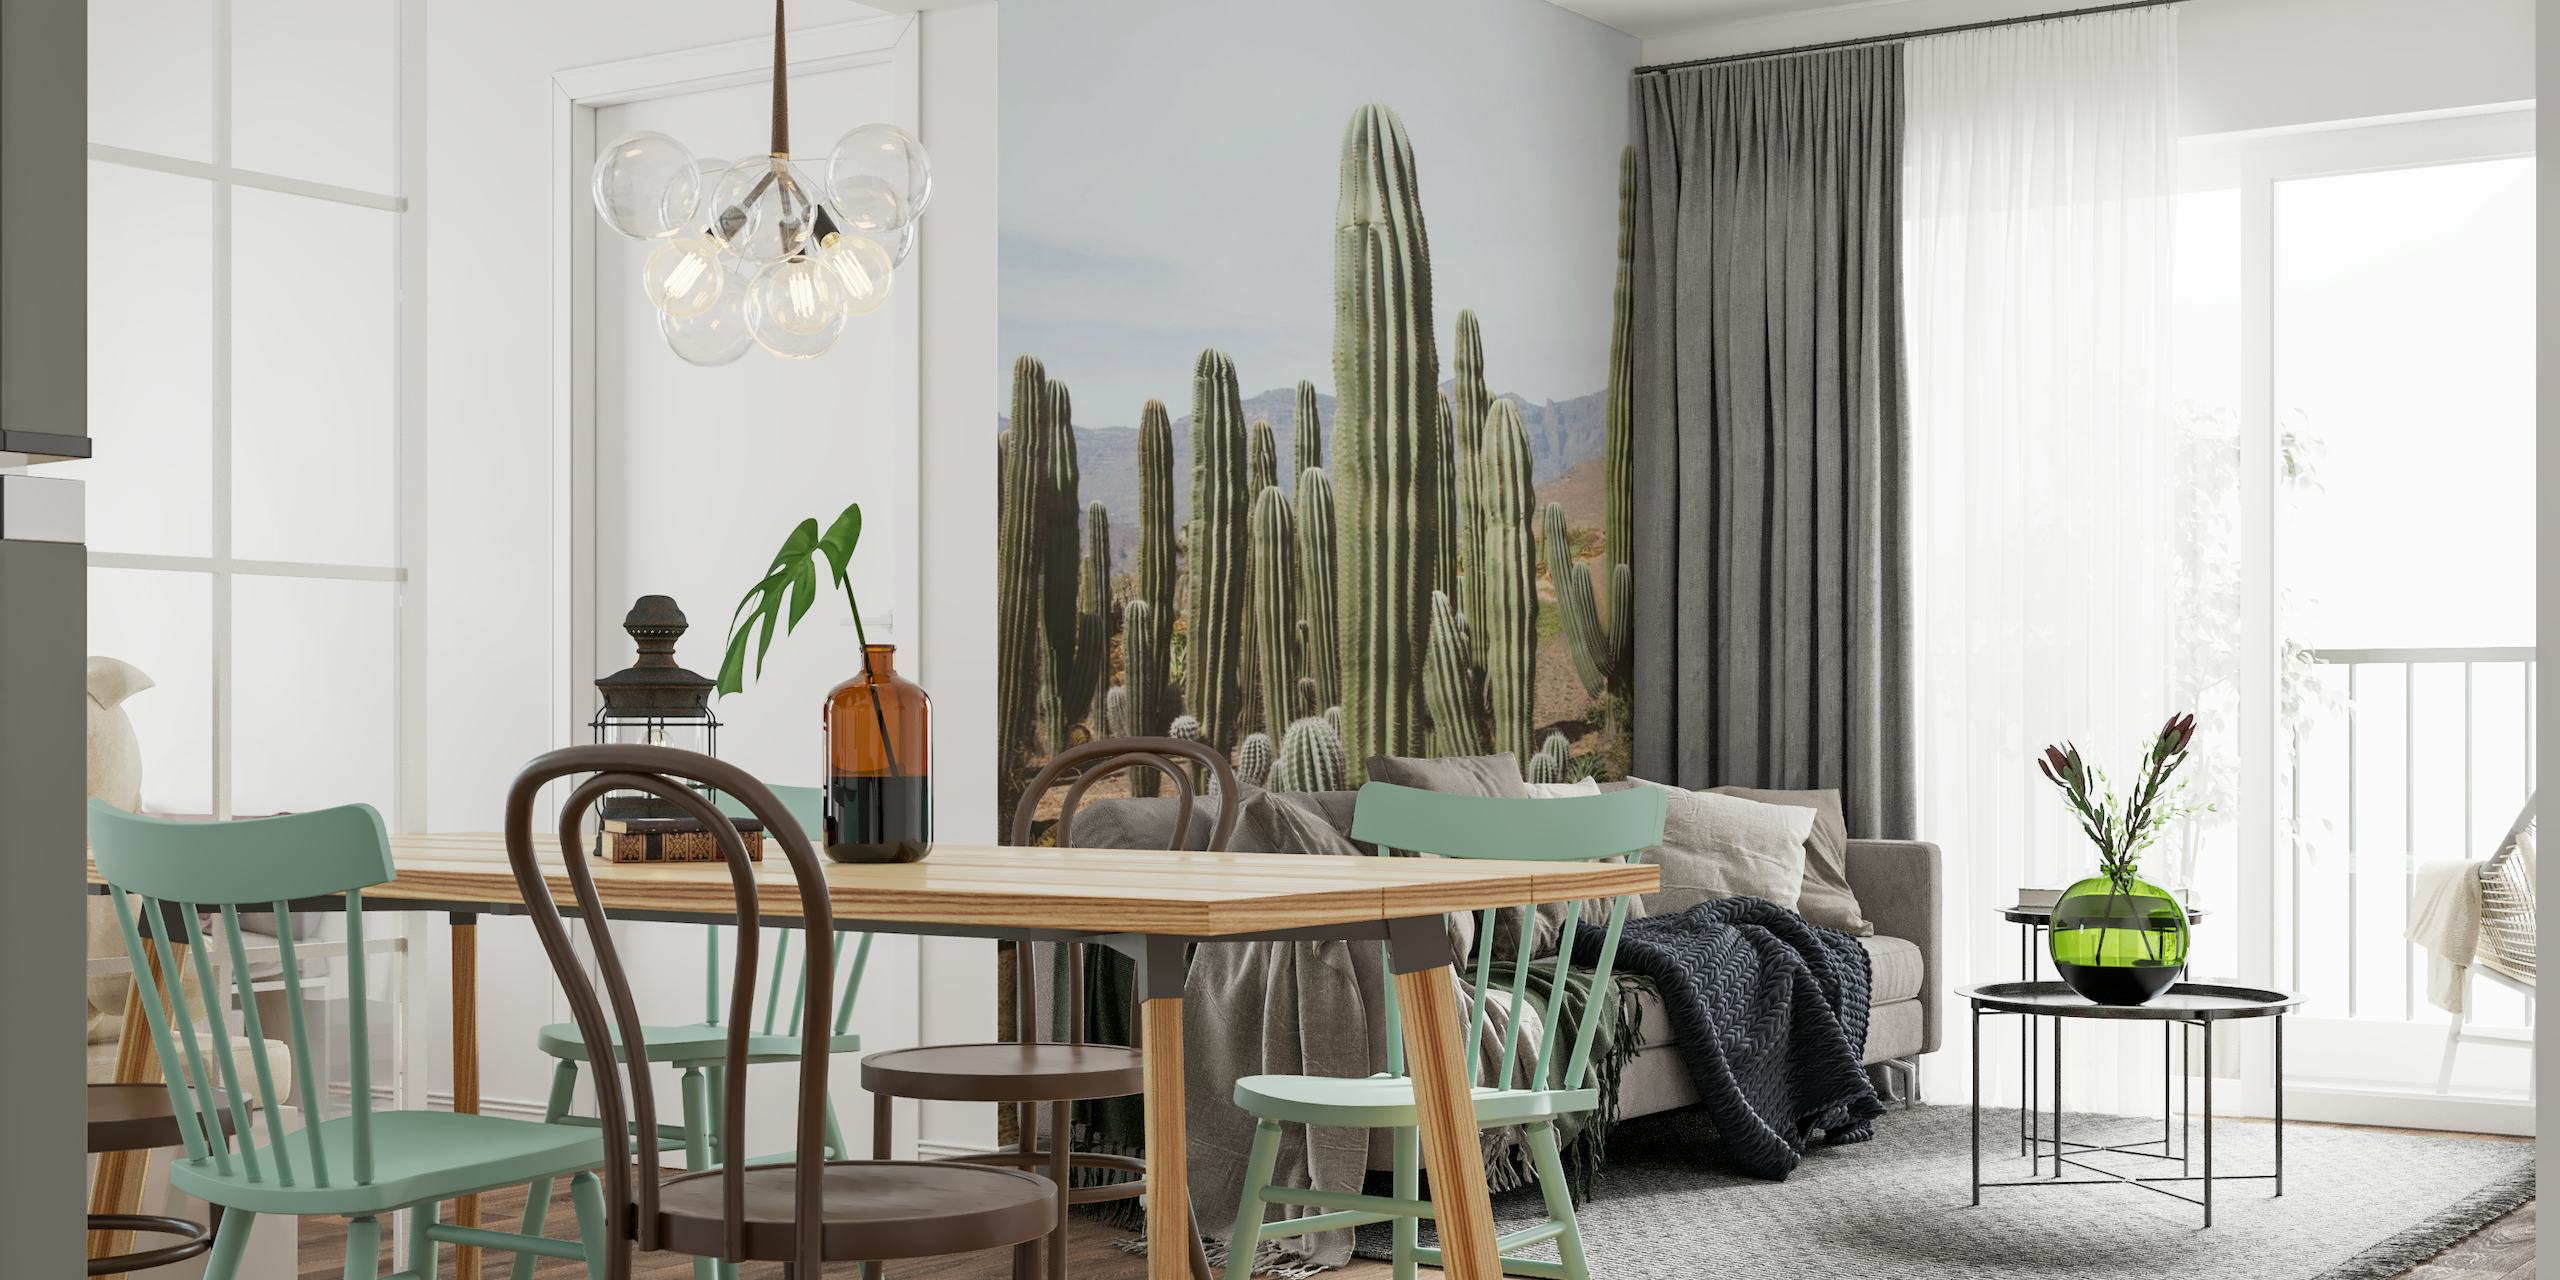 Fototapeta przedstawiająca pustynną oazę Cactus Oasis z wysokimi kaktusami